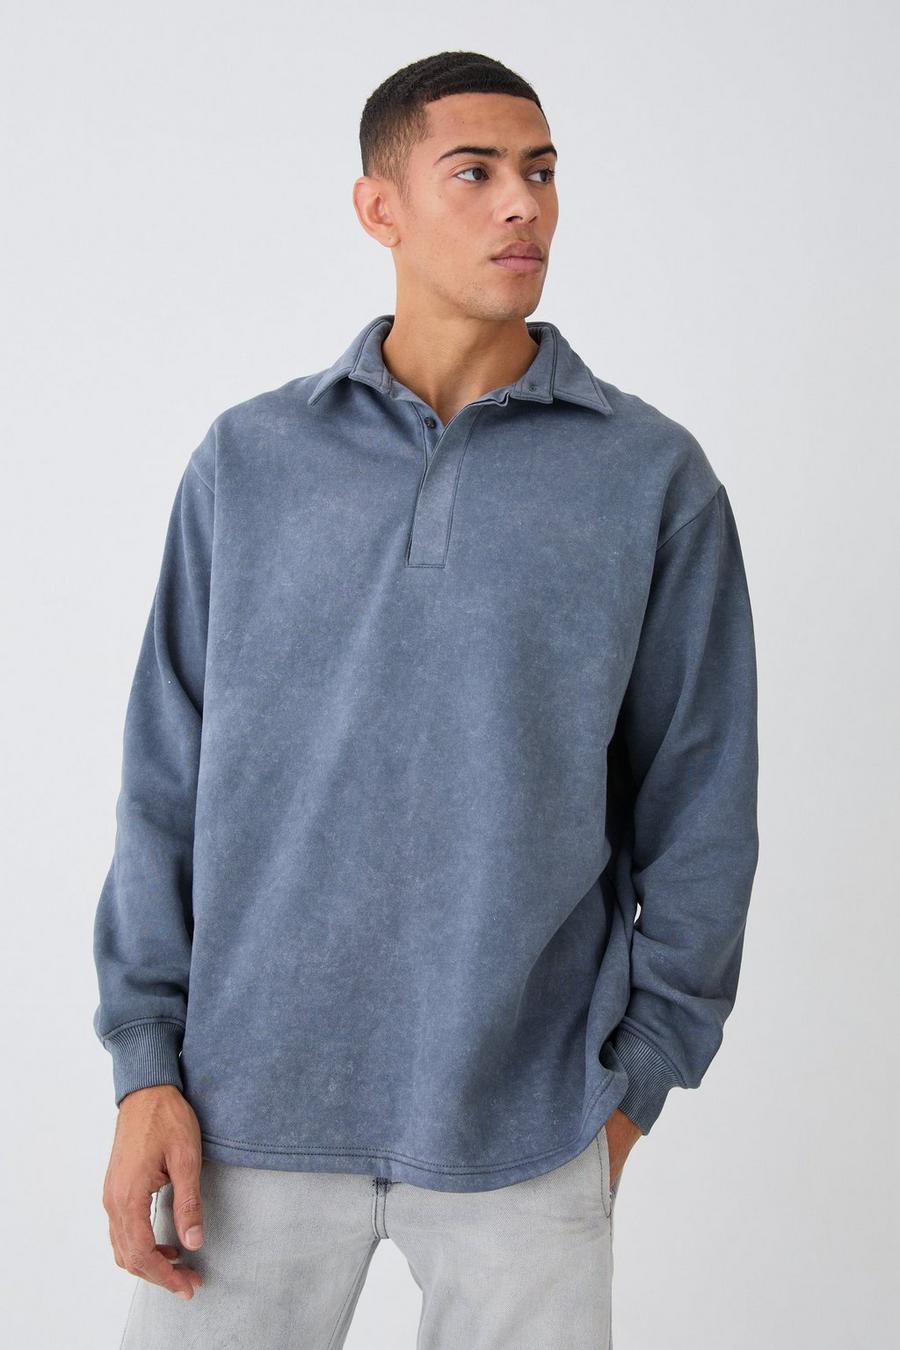 Oversize Rugby Sweatshirt-Poloshirt, Charcoal